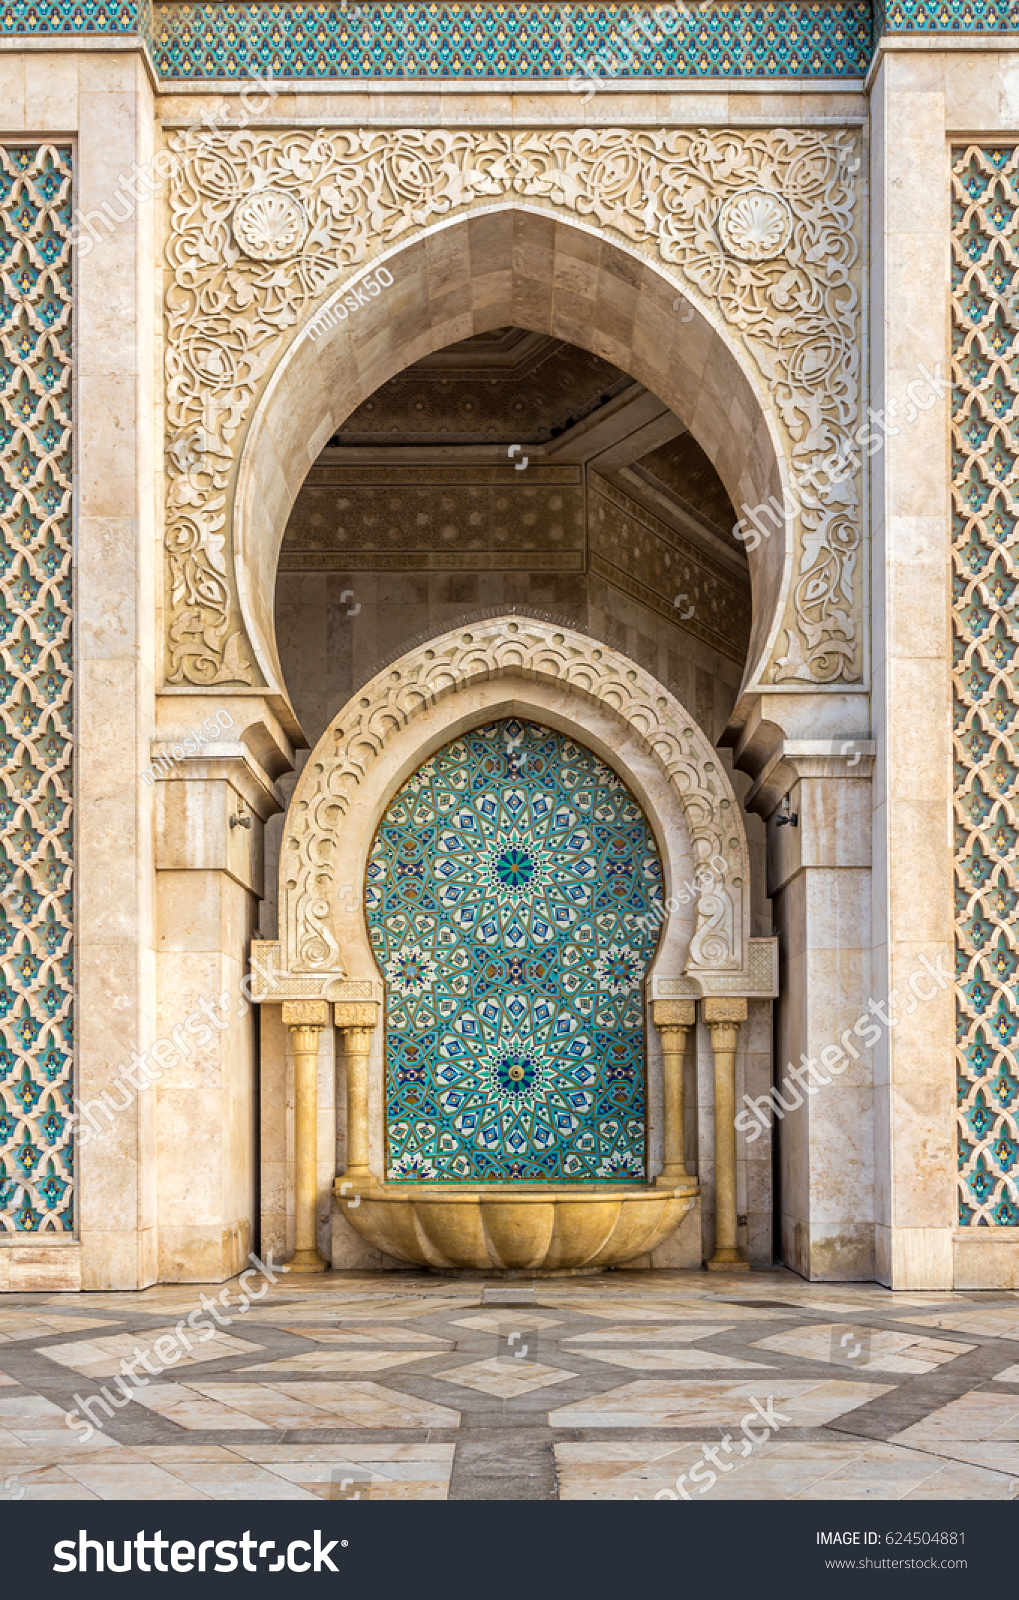 ハサン2世モスクの噴水のアラベスク模様 インカサブランカ モロッコ の写真素材 今すぐ編集